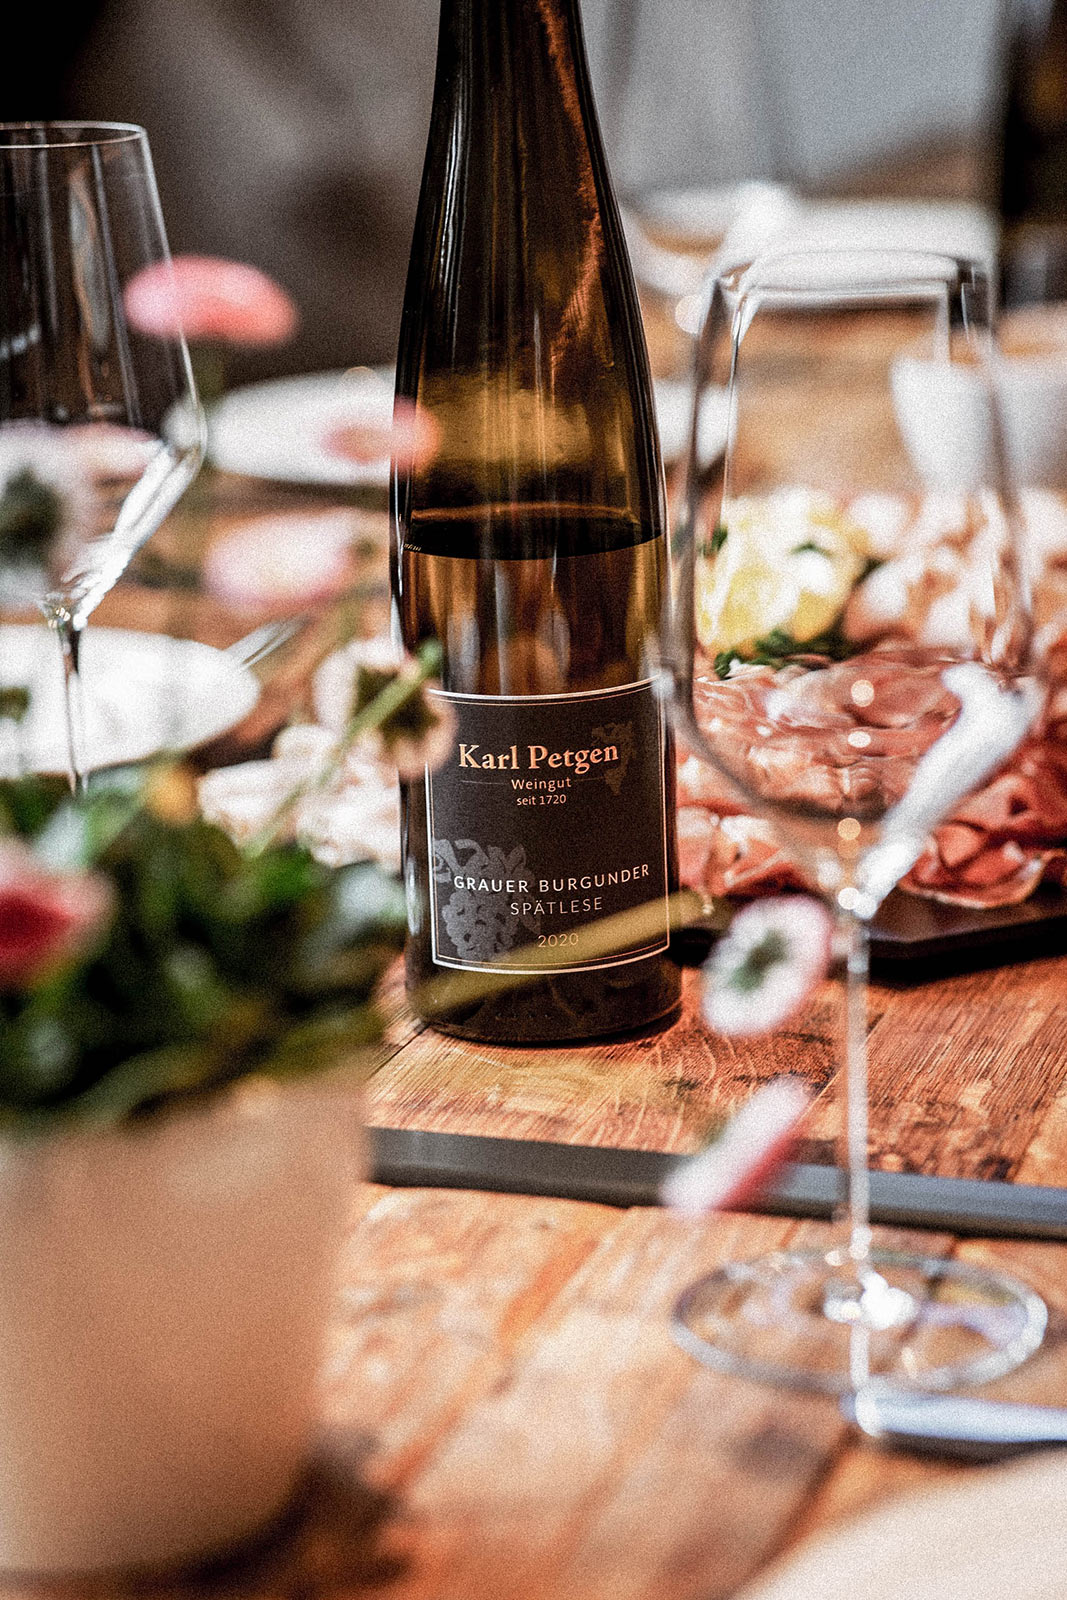 Wein aus dem Saarland – Weingut Karl Petgen – Weinflasche und Glas vor Vesperplatte